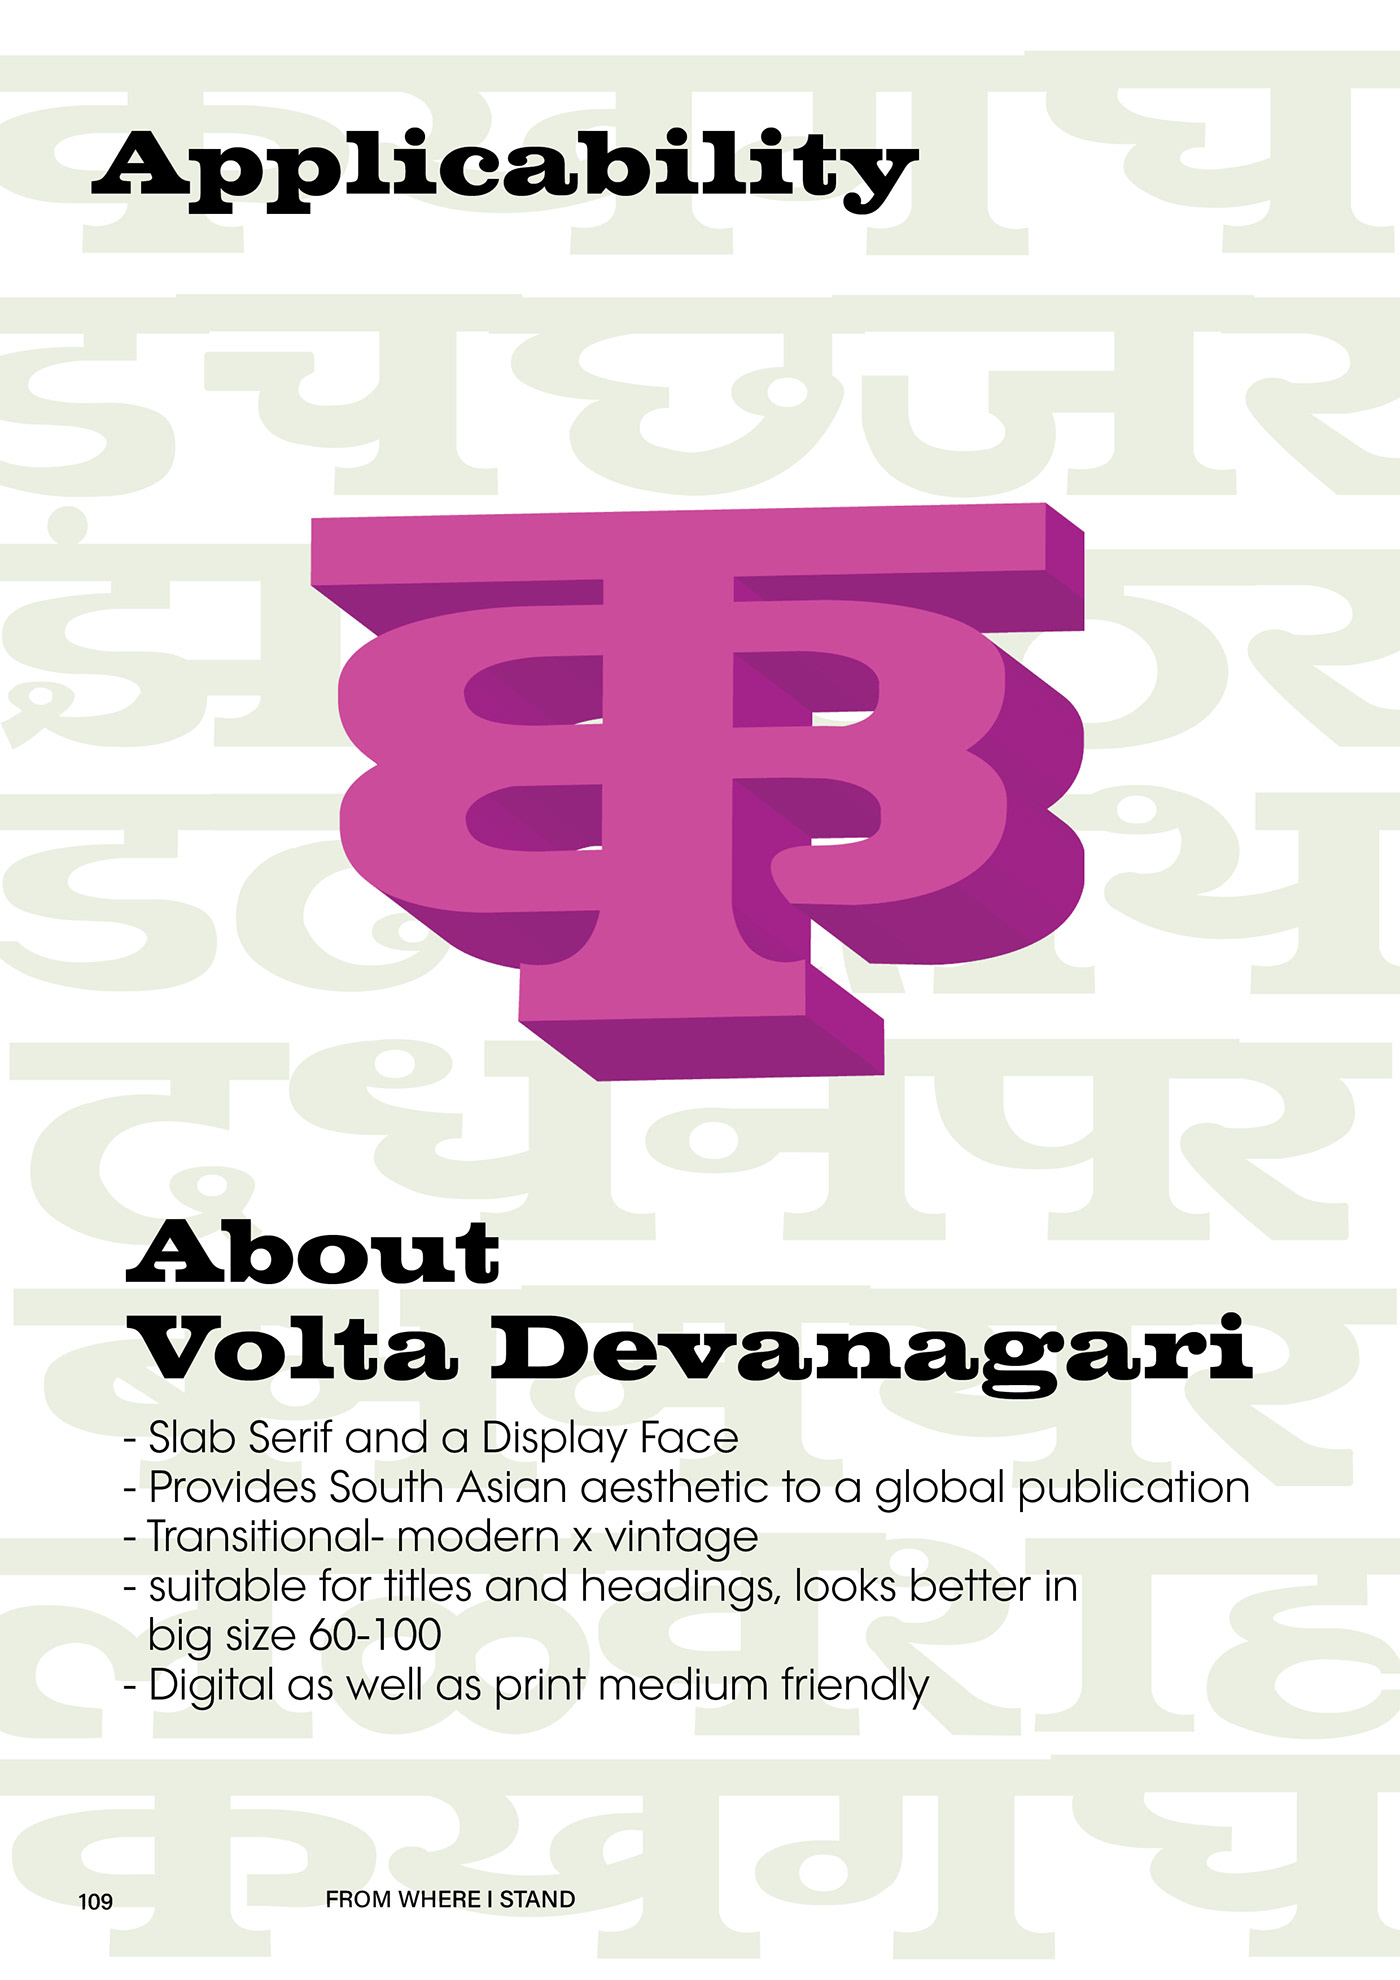 devanagari editorial typedesign visual identity vogue vogue India